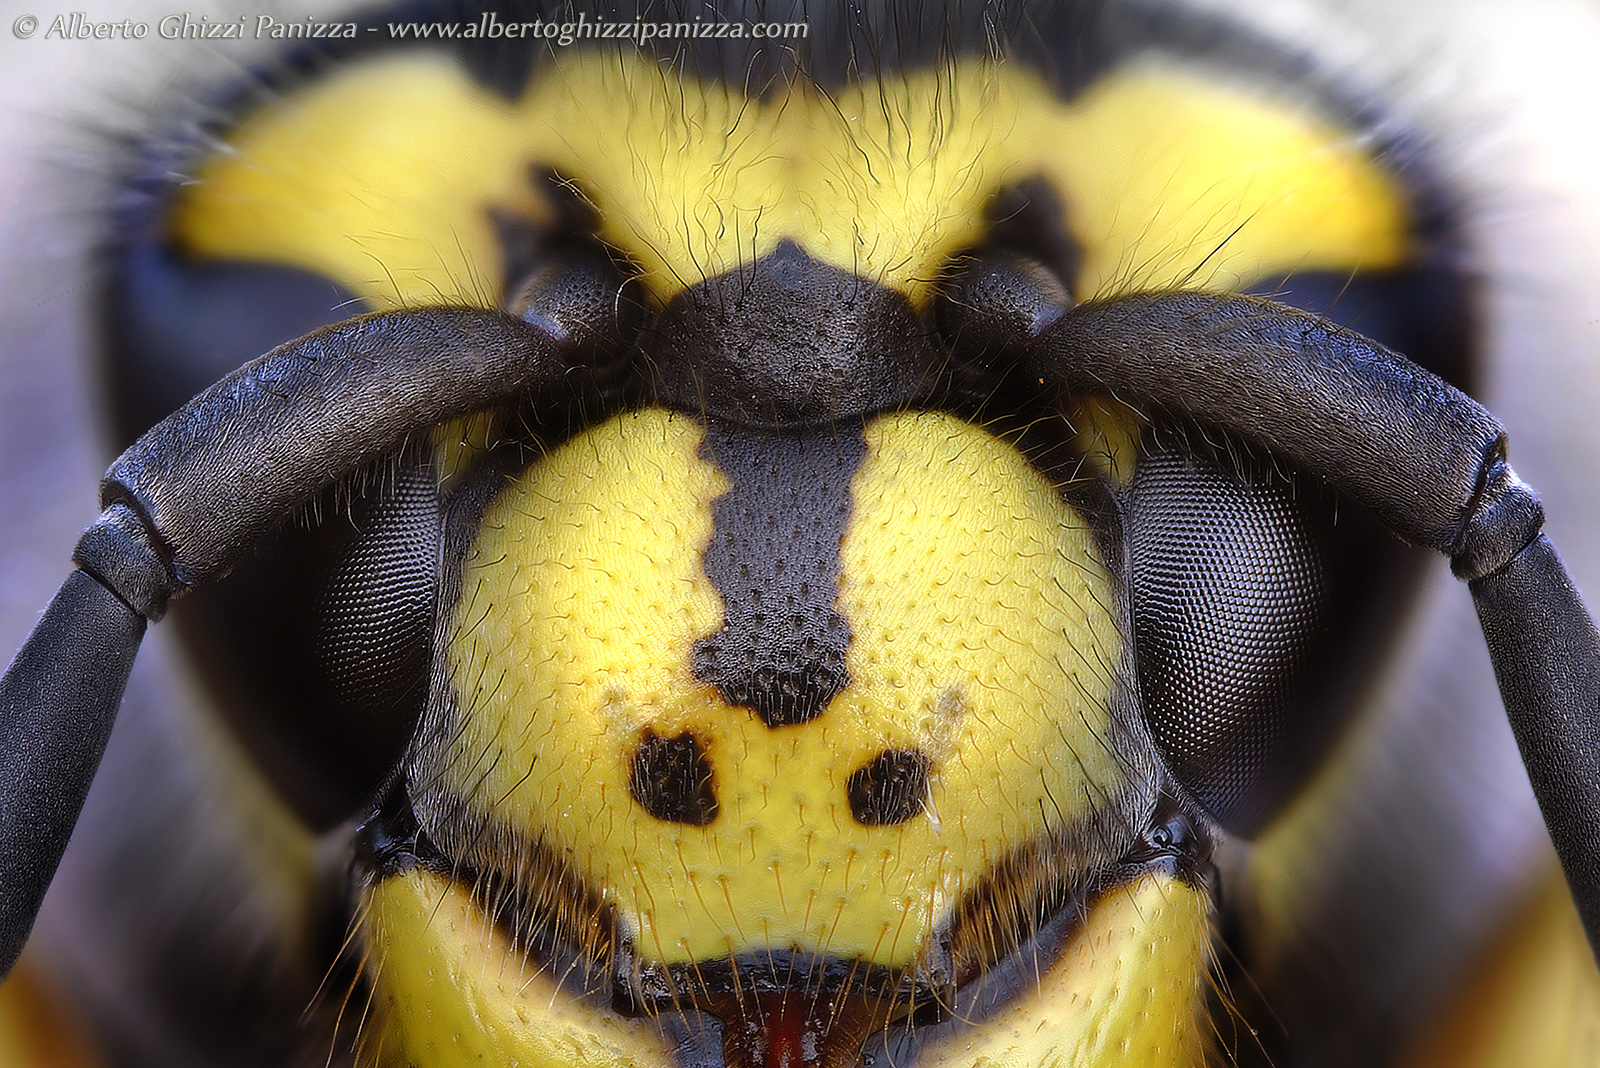 Gli occhi della vespa...